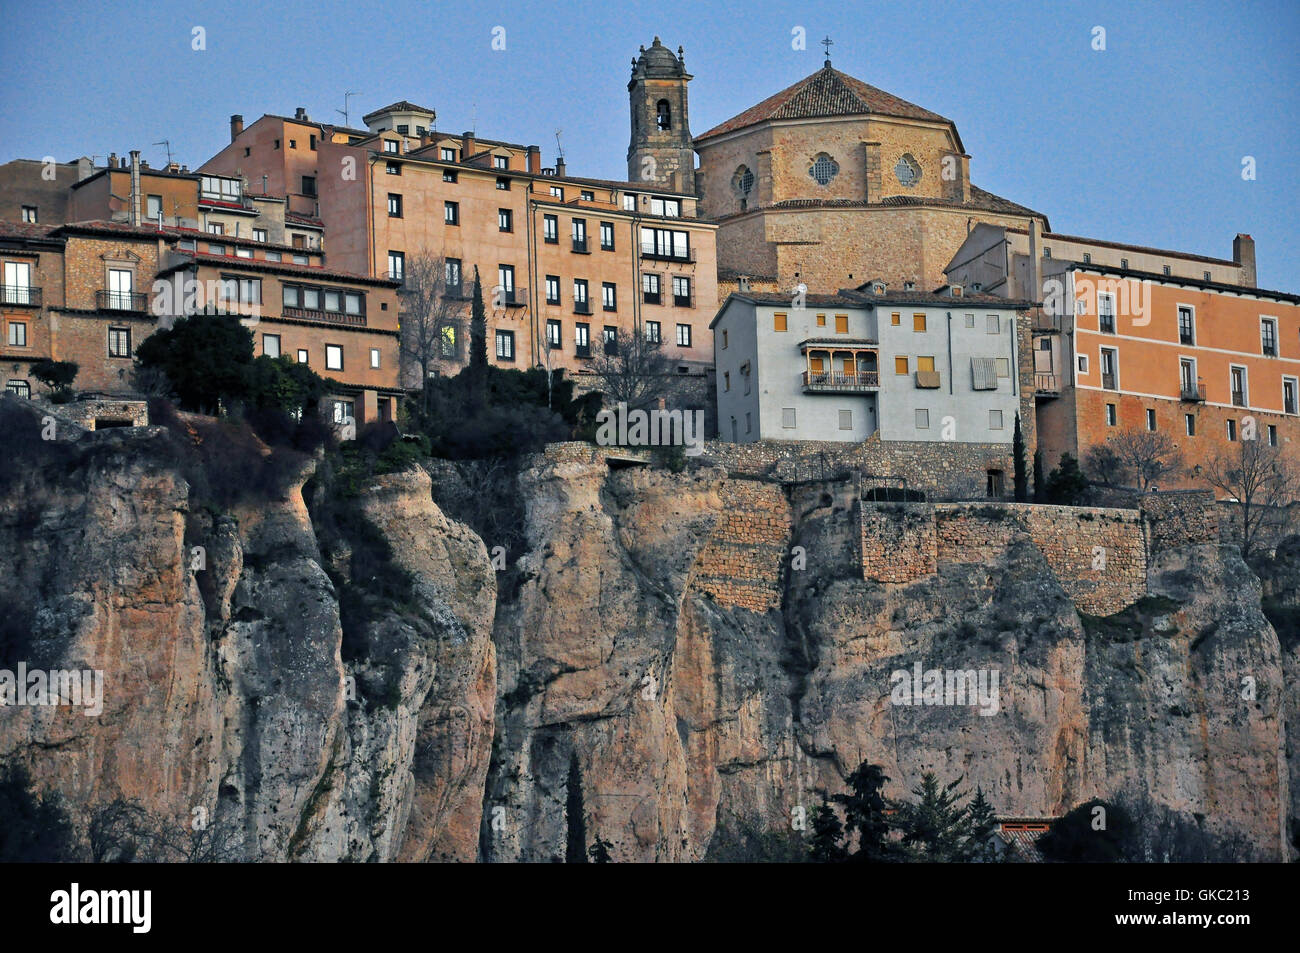 Hängende Häuser der historischen Stadt Cuenca, Kastilien-La Mancha, Spanien  Stockfotografie - Alamy